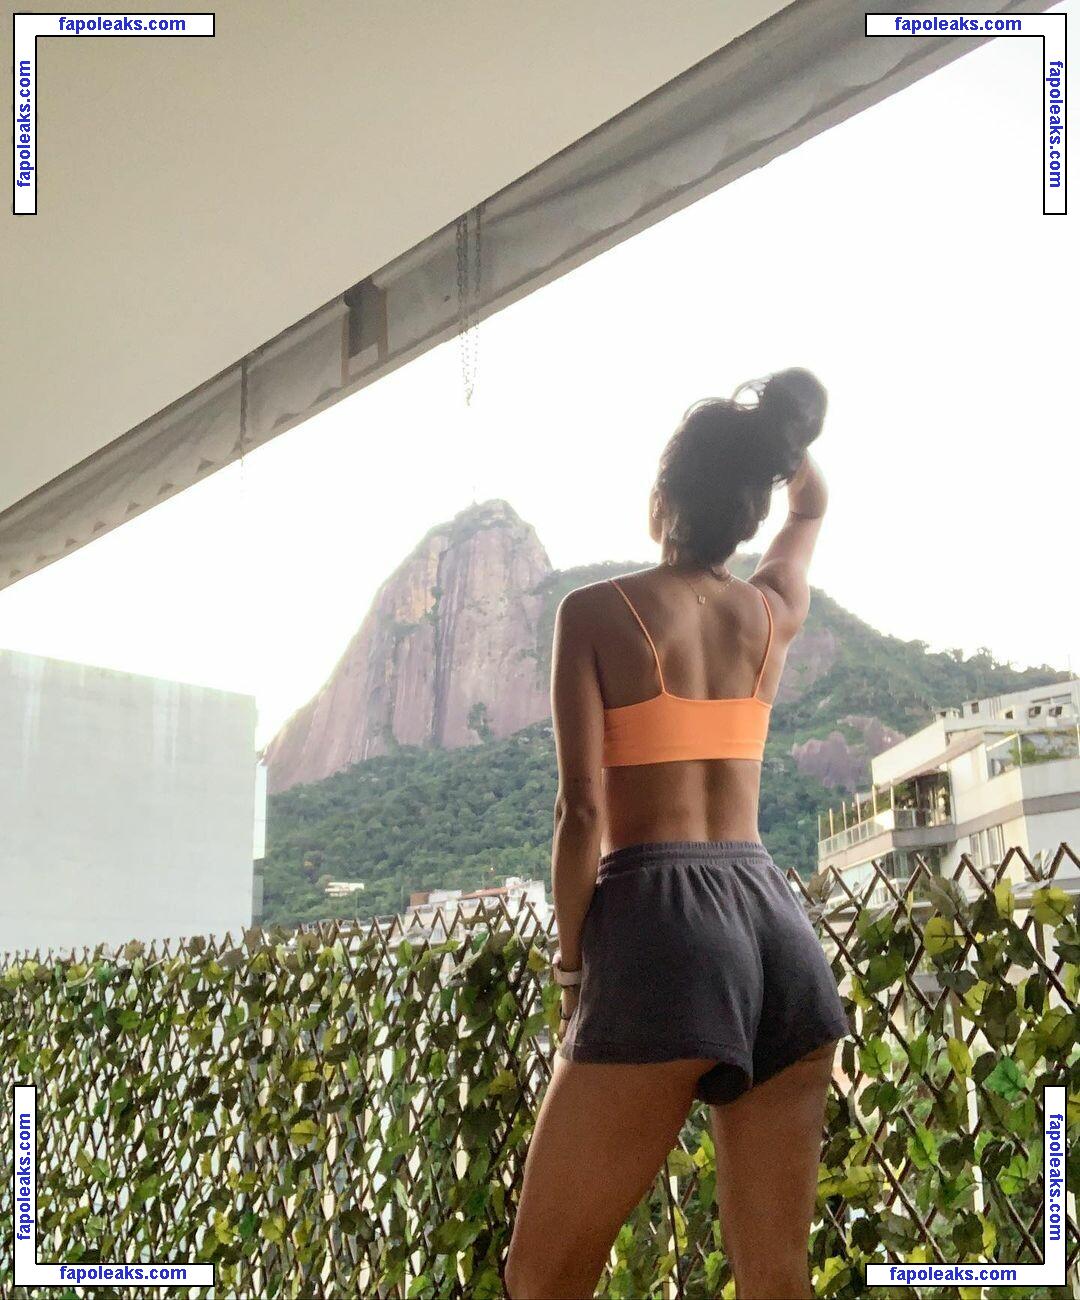 Lara Nobre / larinha_nobre nude photo #0005 from OnlyFans